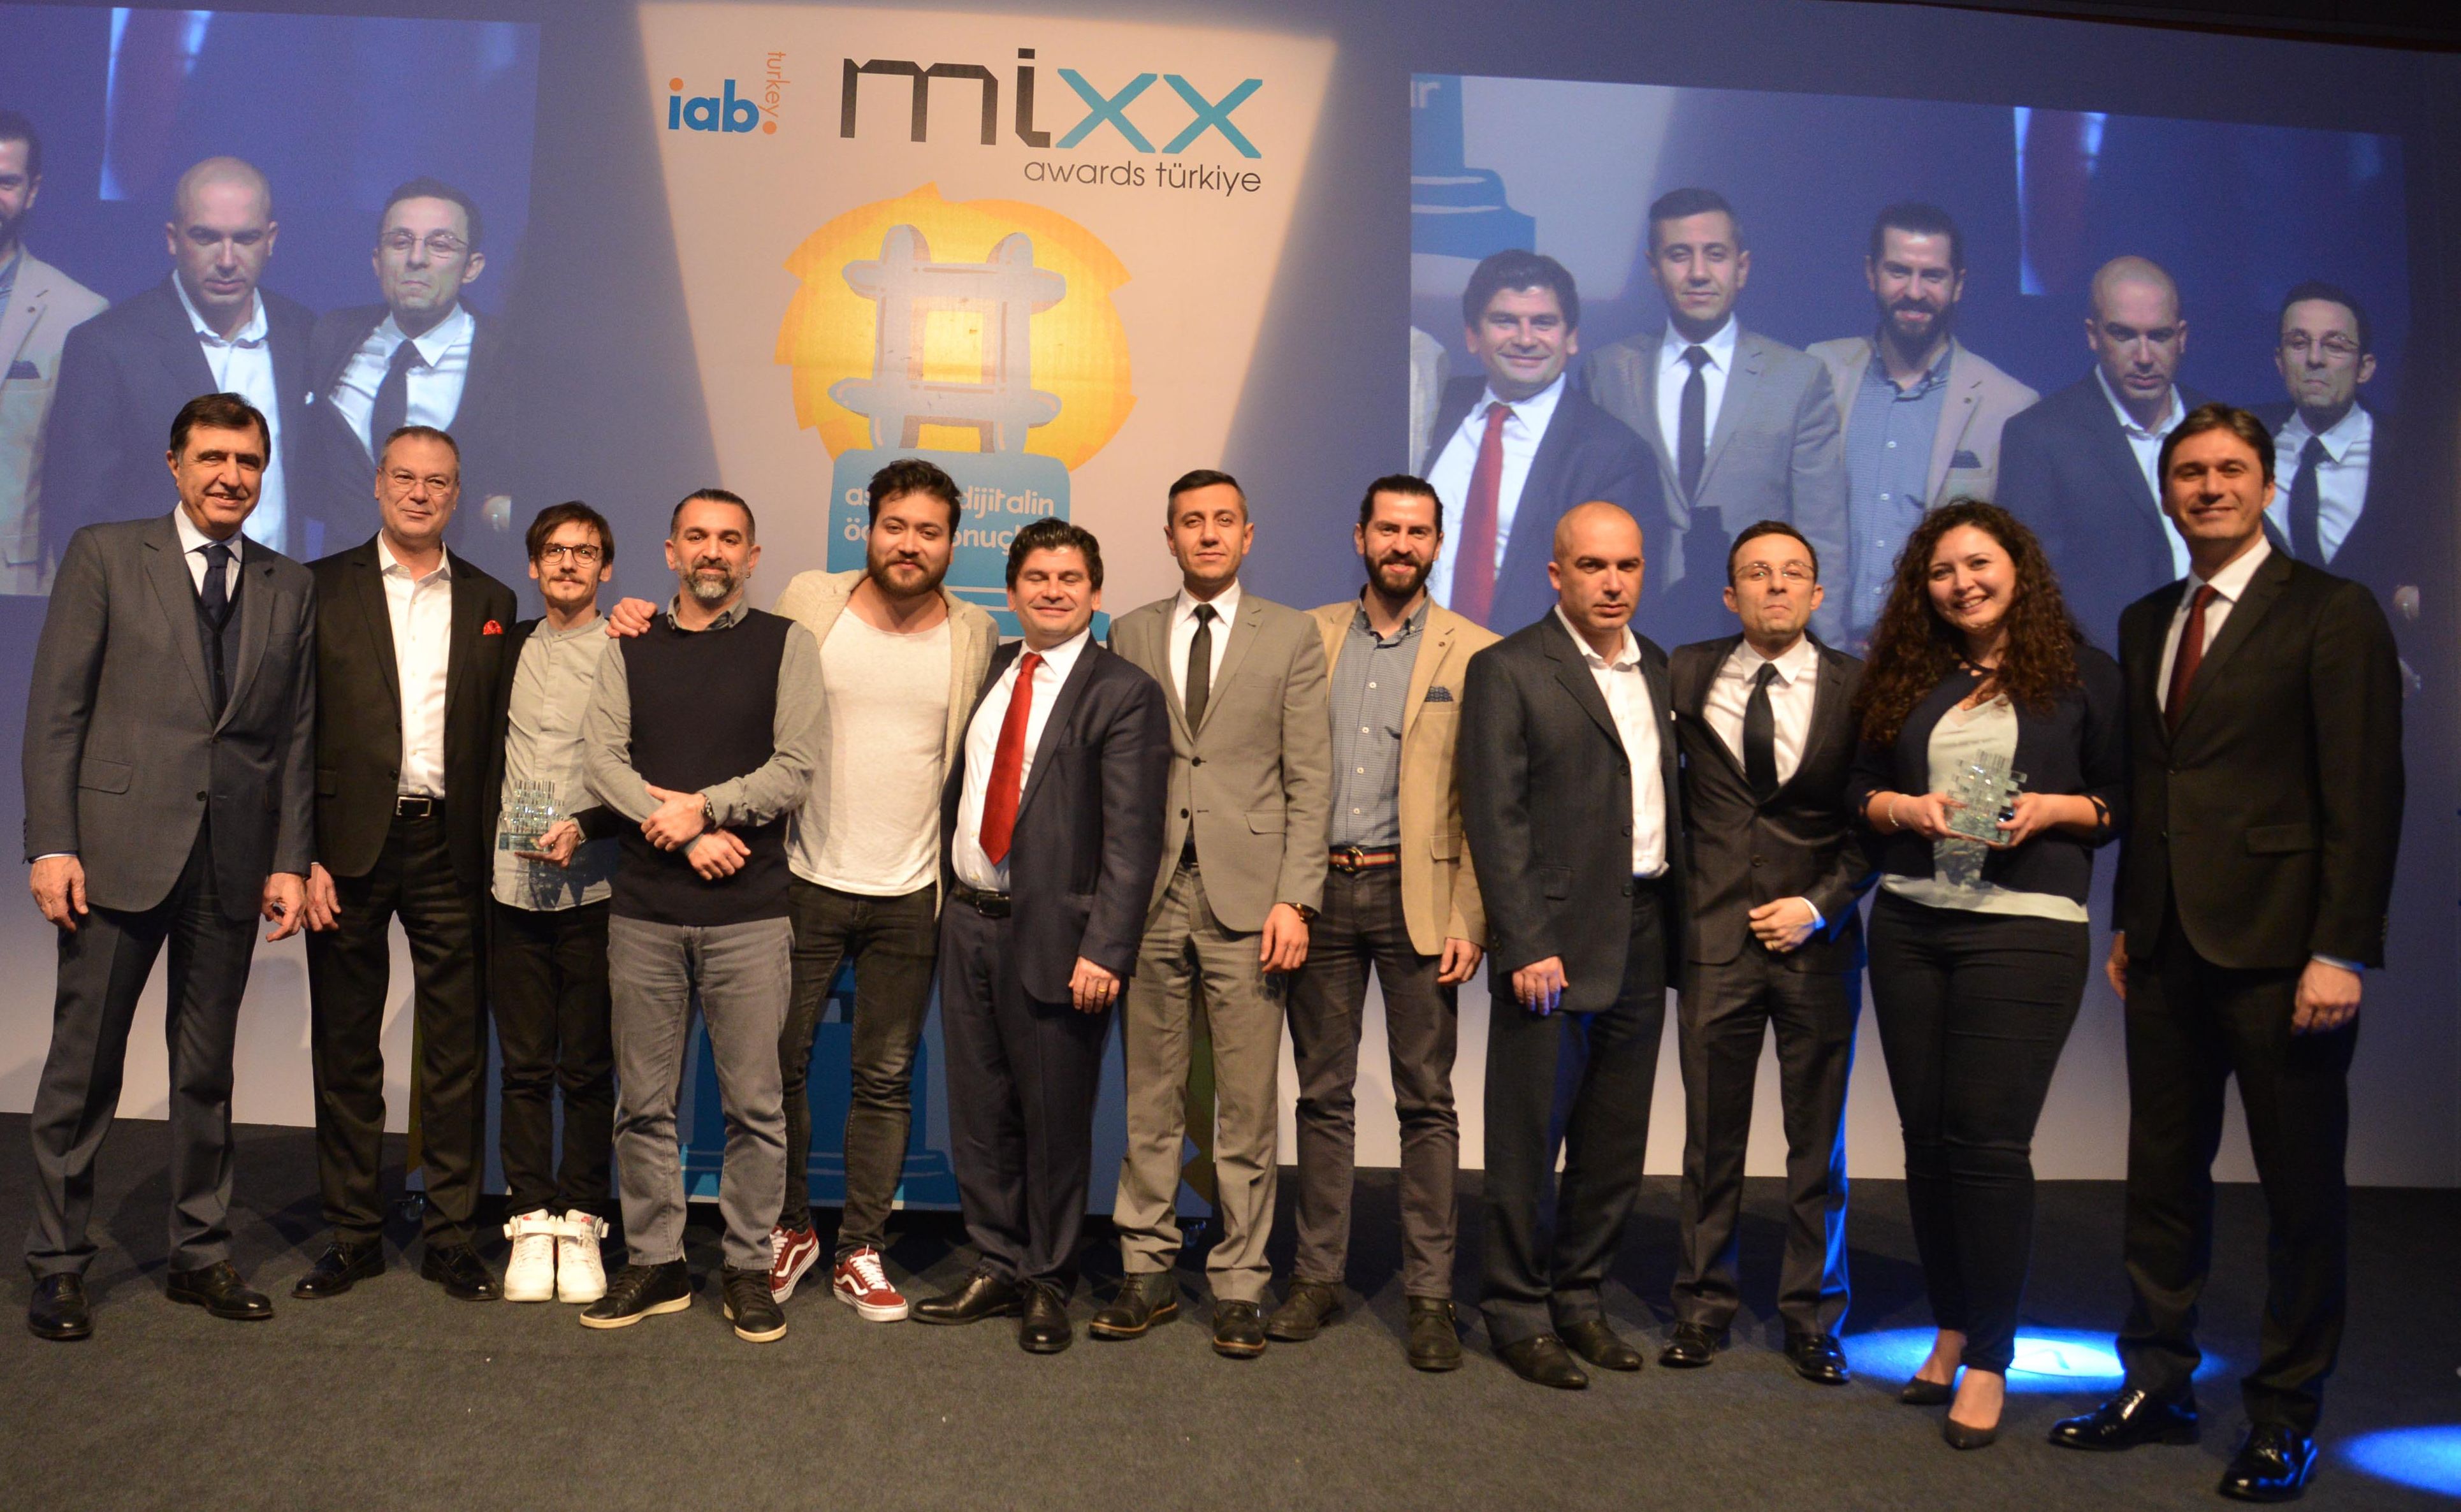 MIXX Awards Türkiye'nin kazananları belli oldu